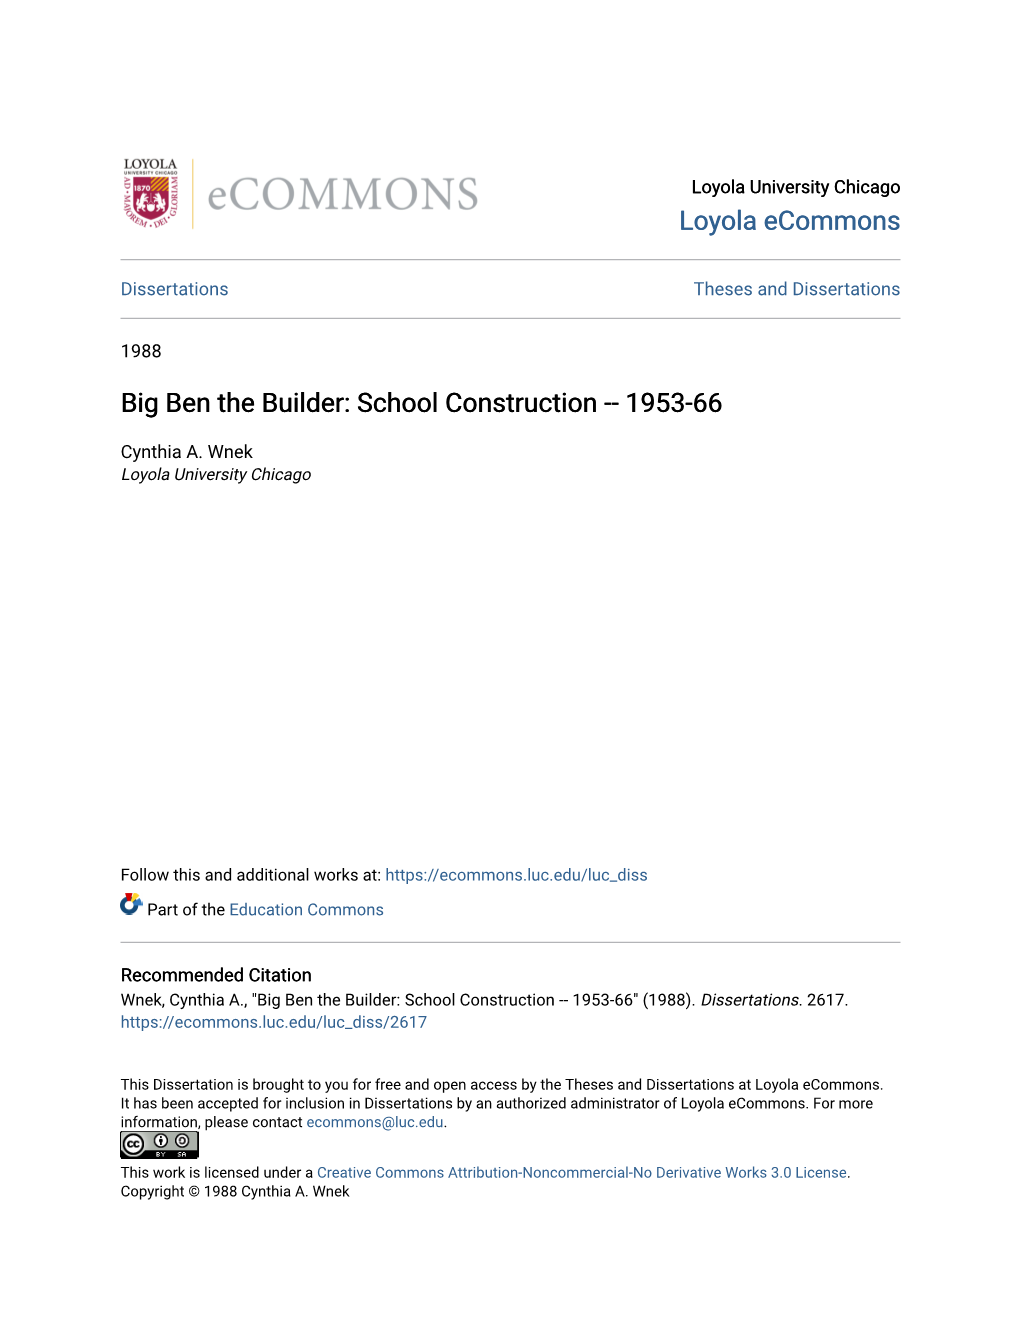 Big Ben the Builder: School Construction -- 1953-66